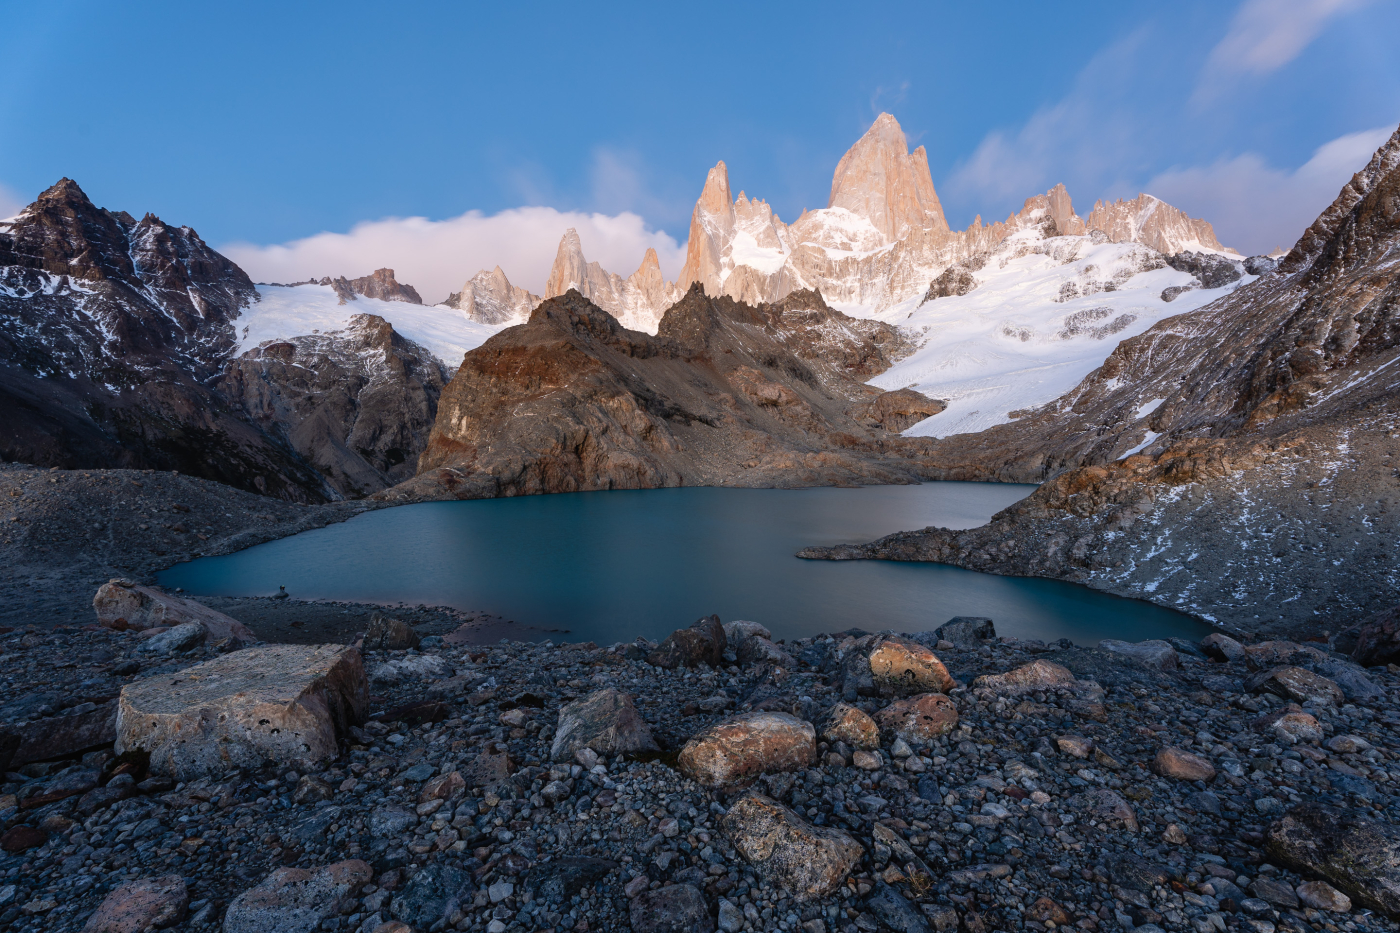 Od pampy k ledovcům argentinskou Patagonií